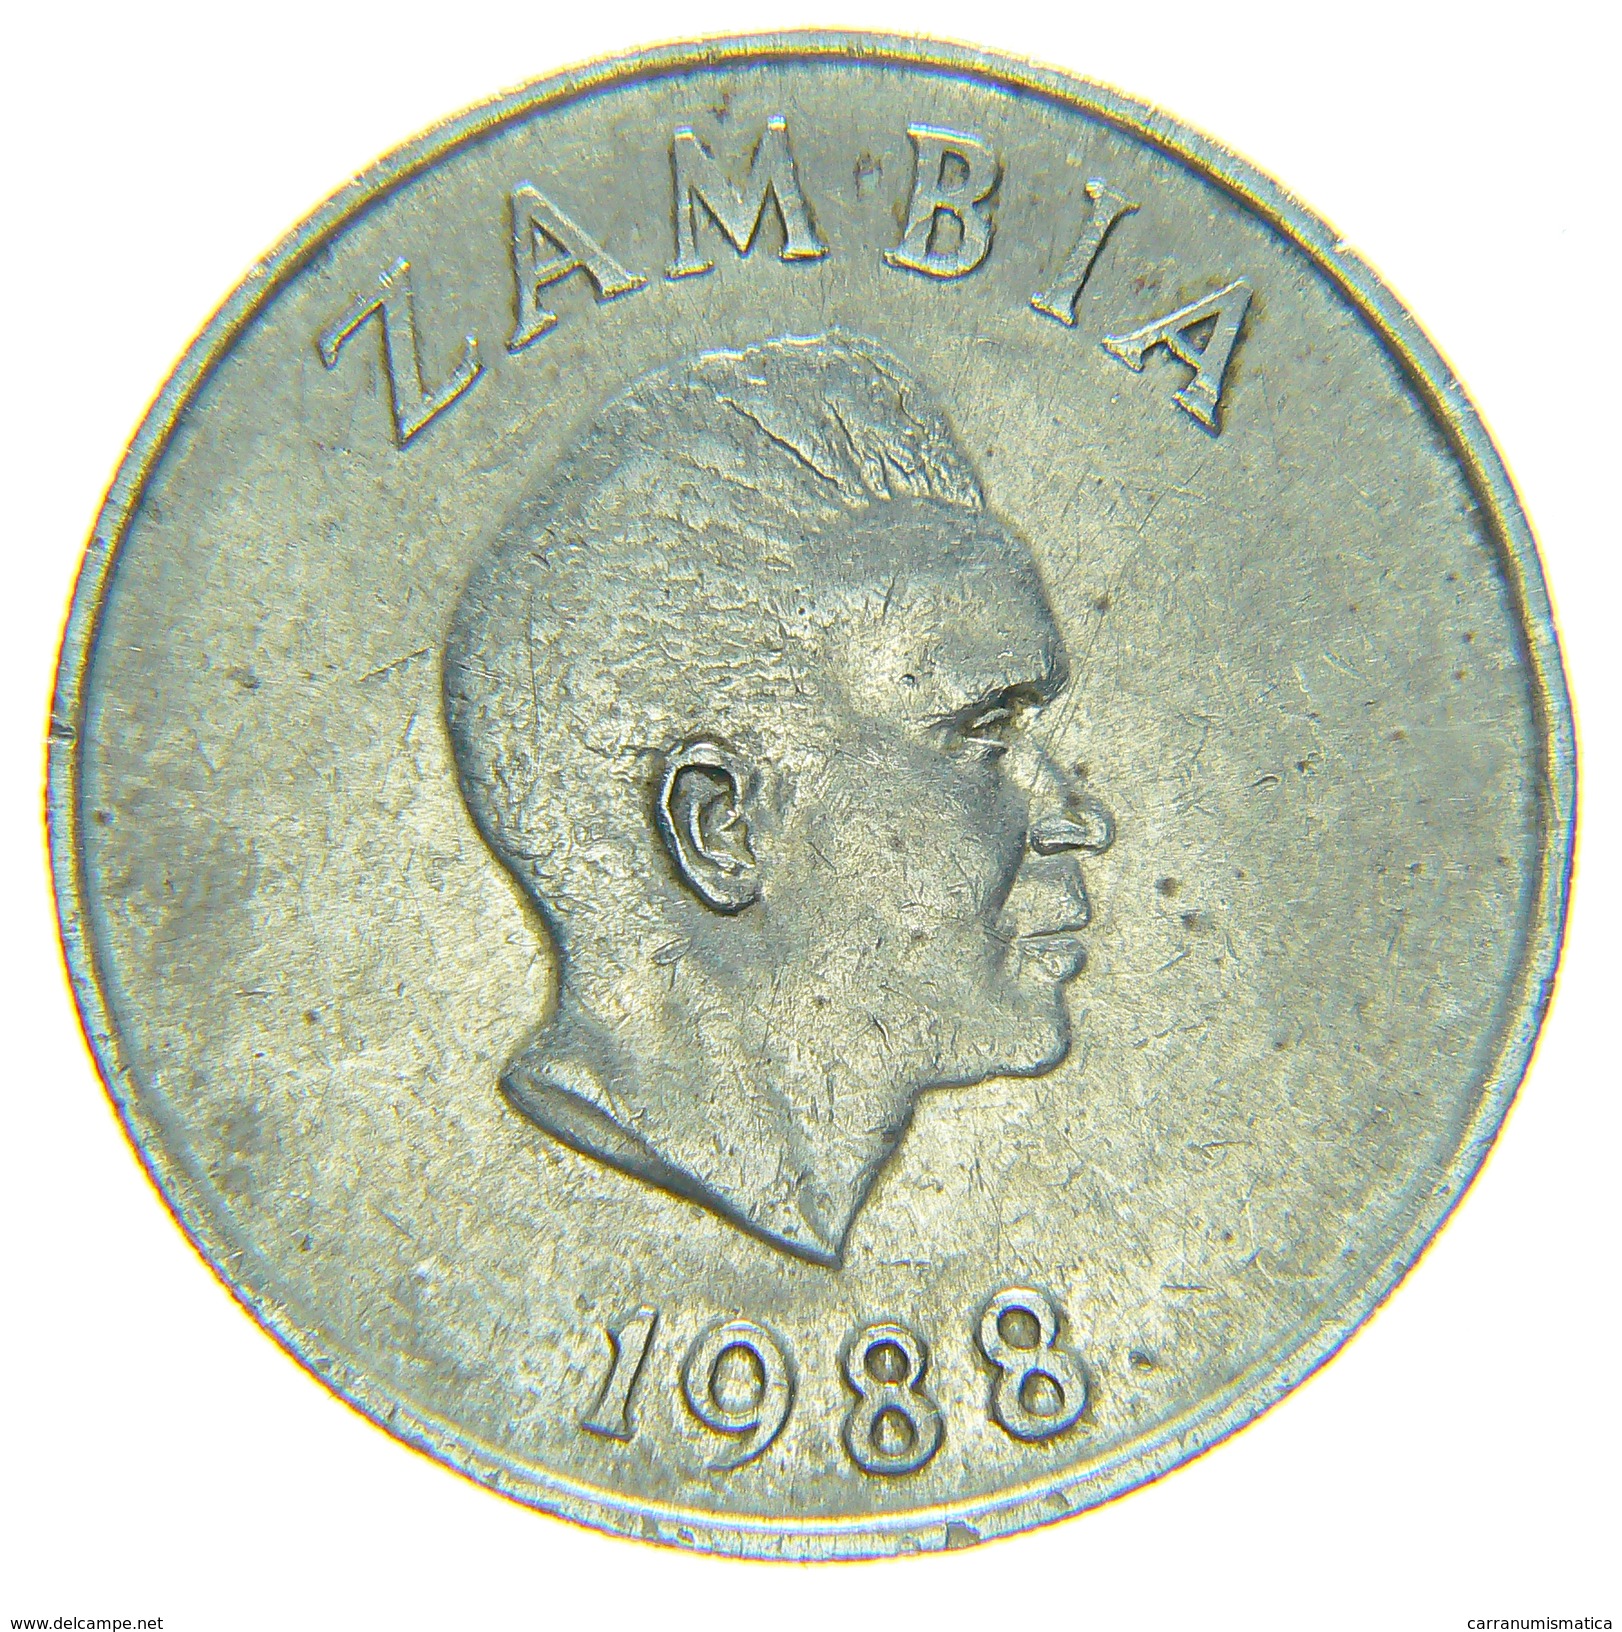 [NC] ZAMBIA - 20 NGWEE 1988 - Zambia